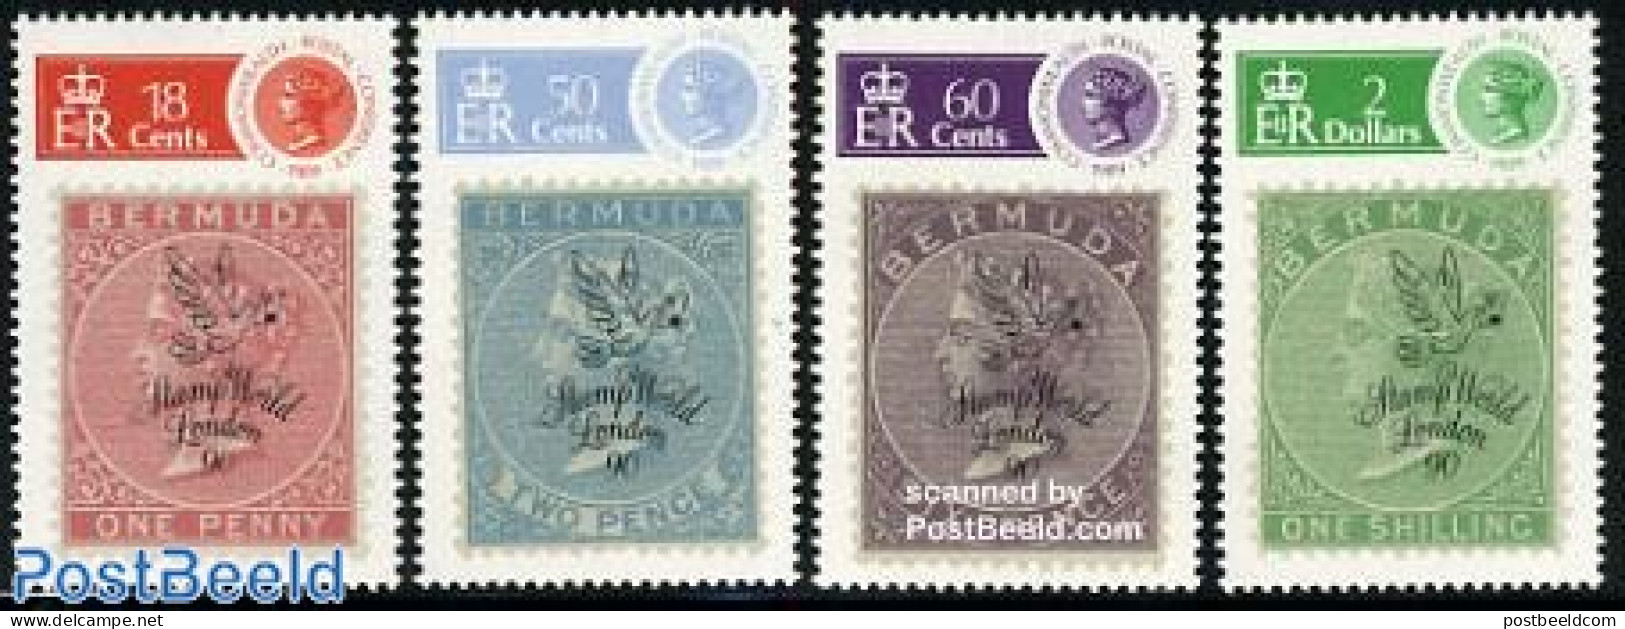 Bermuda 1990 Stamp World London 4v, Mint NH, Stamps On Stamps - Francobolli Su Francobolli